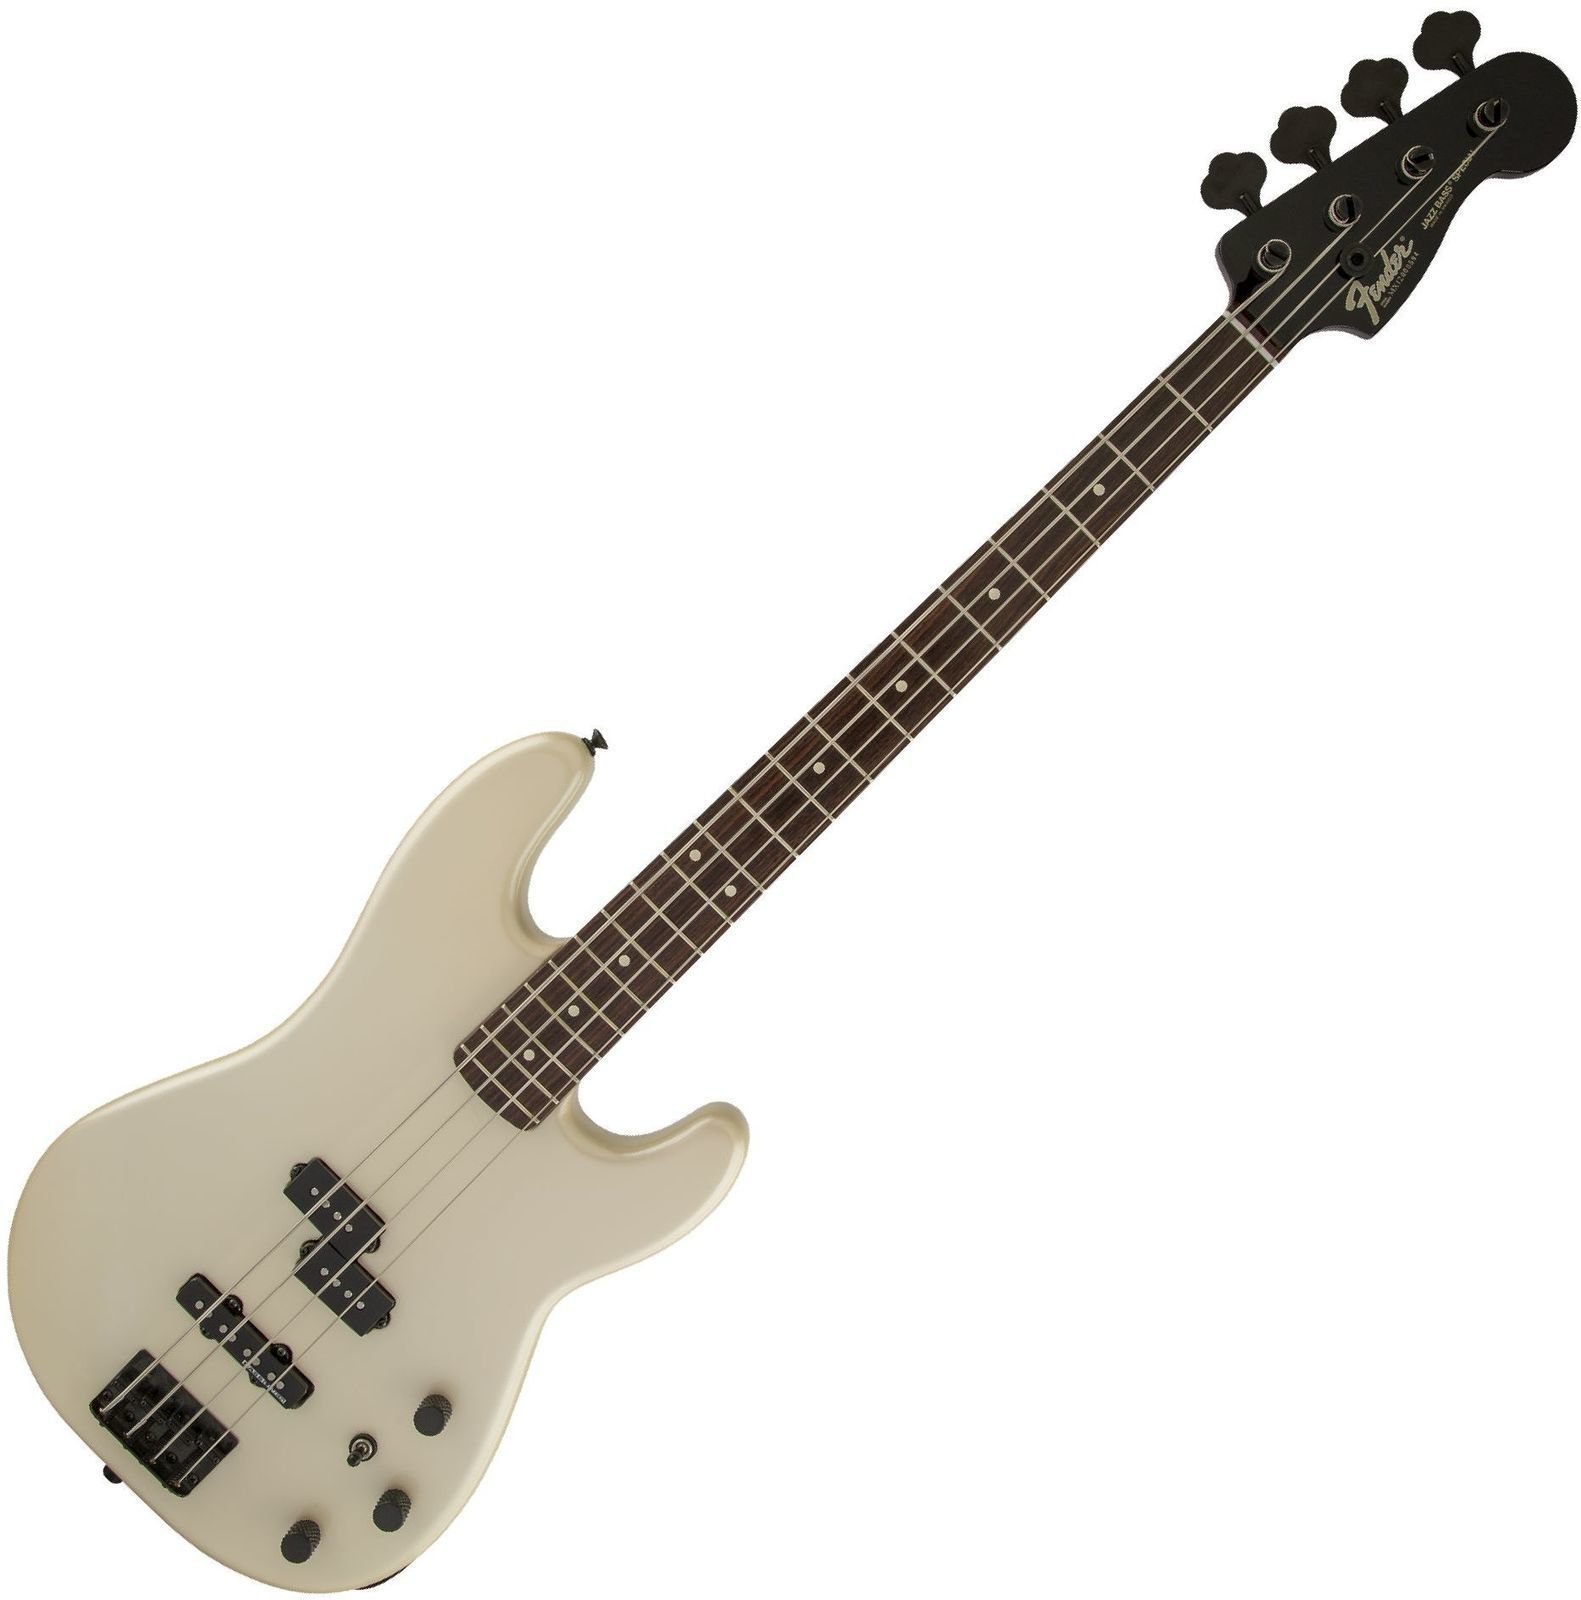 Baixo de 4 cordas Fender Duff McKagan P-Bass RW Pearl White Black Painted Neck